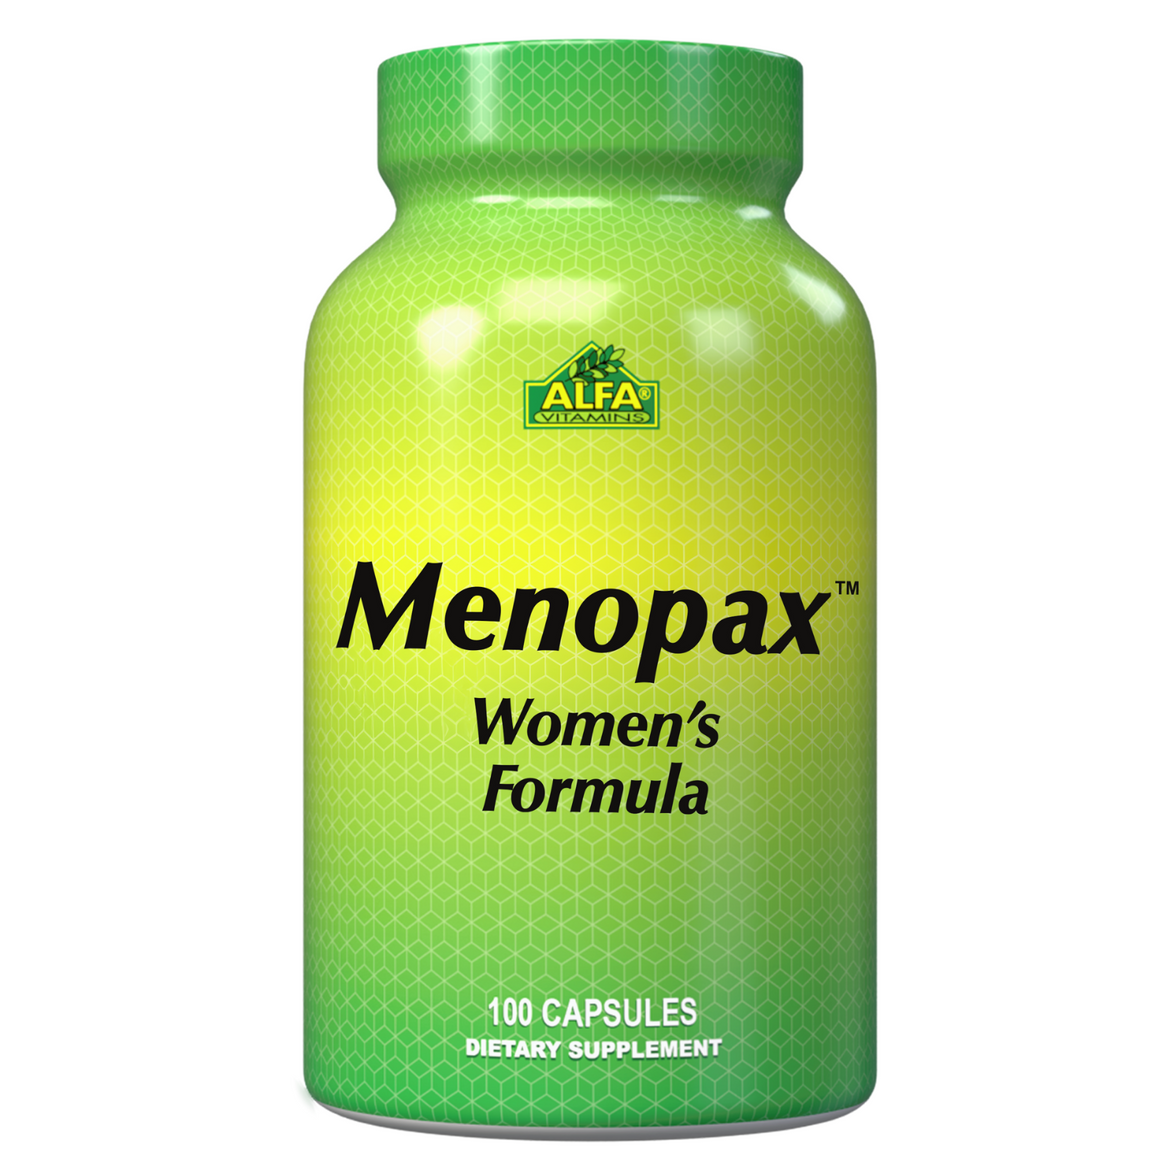 Menopax Women's Formula - 100 capsules